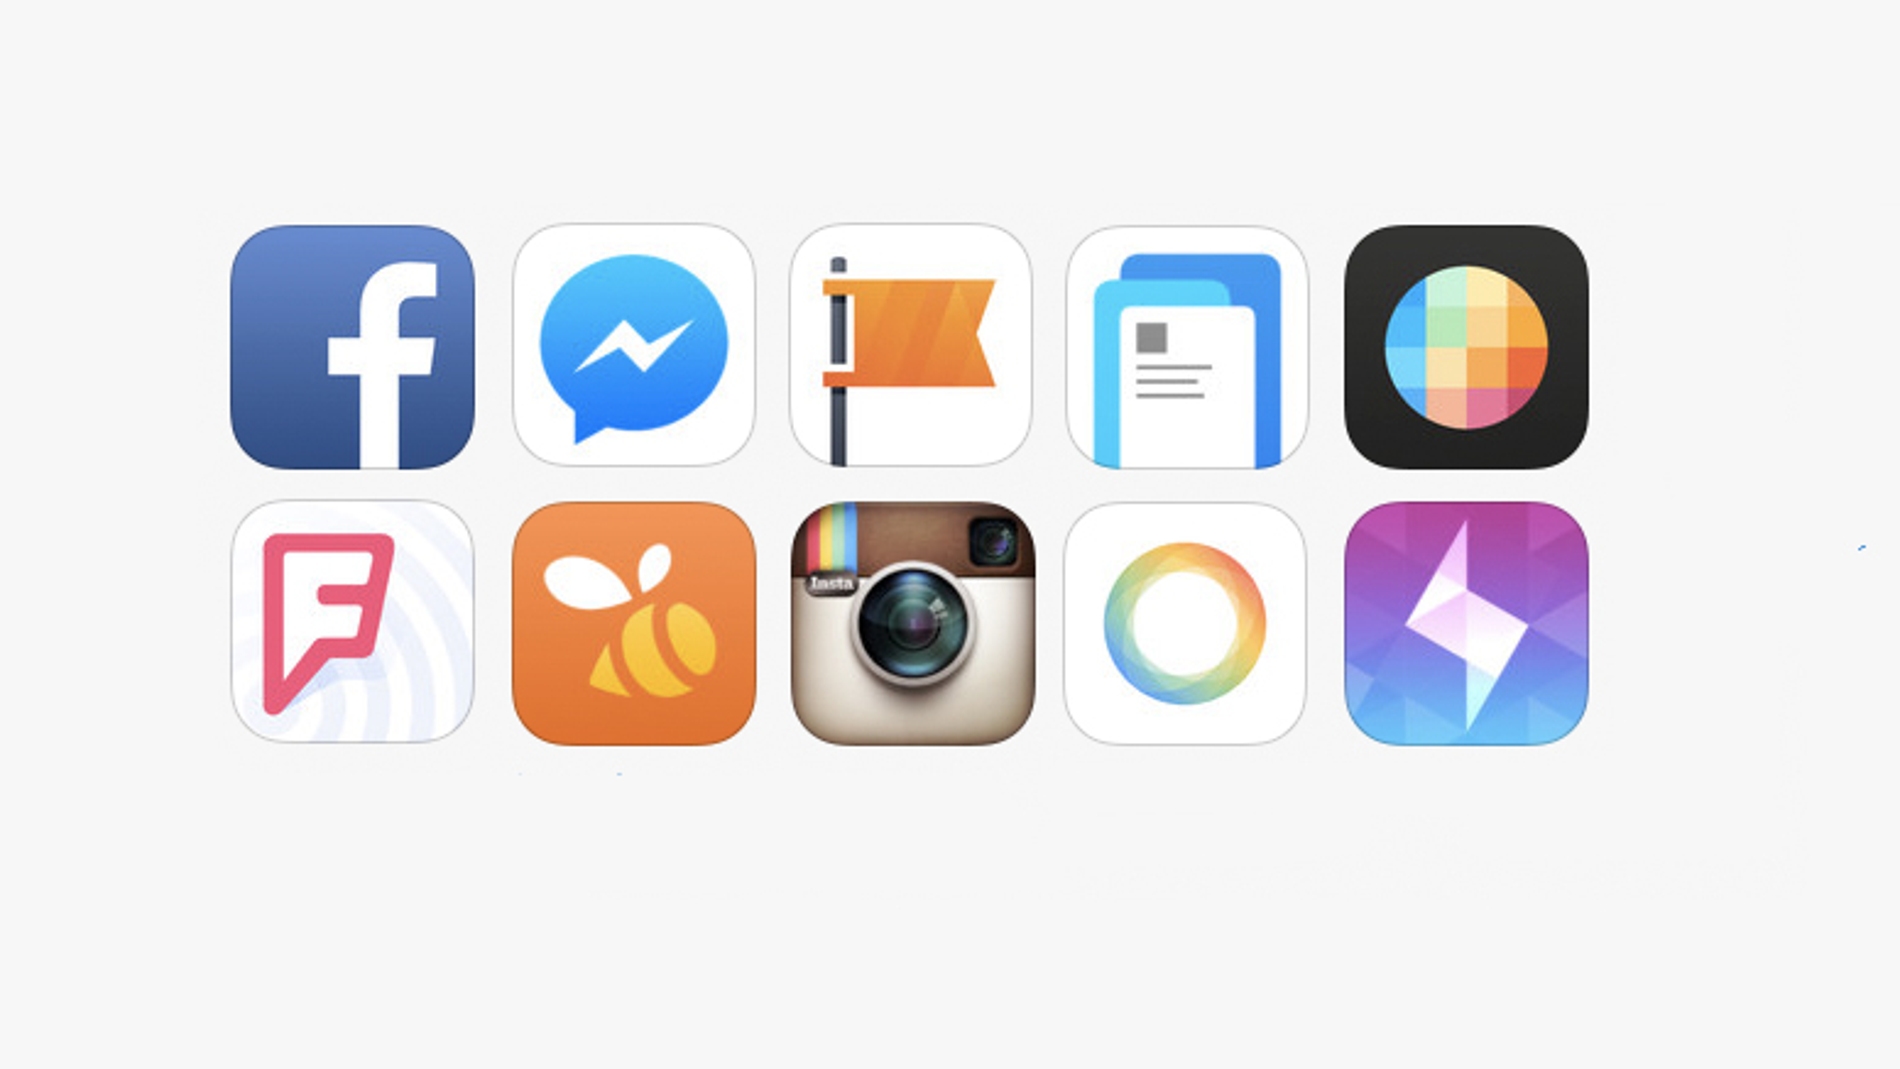 Iconos de varias apps de una empresa